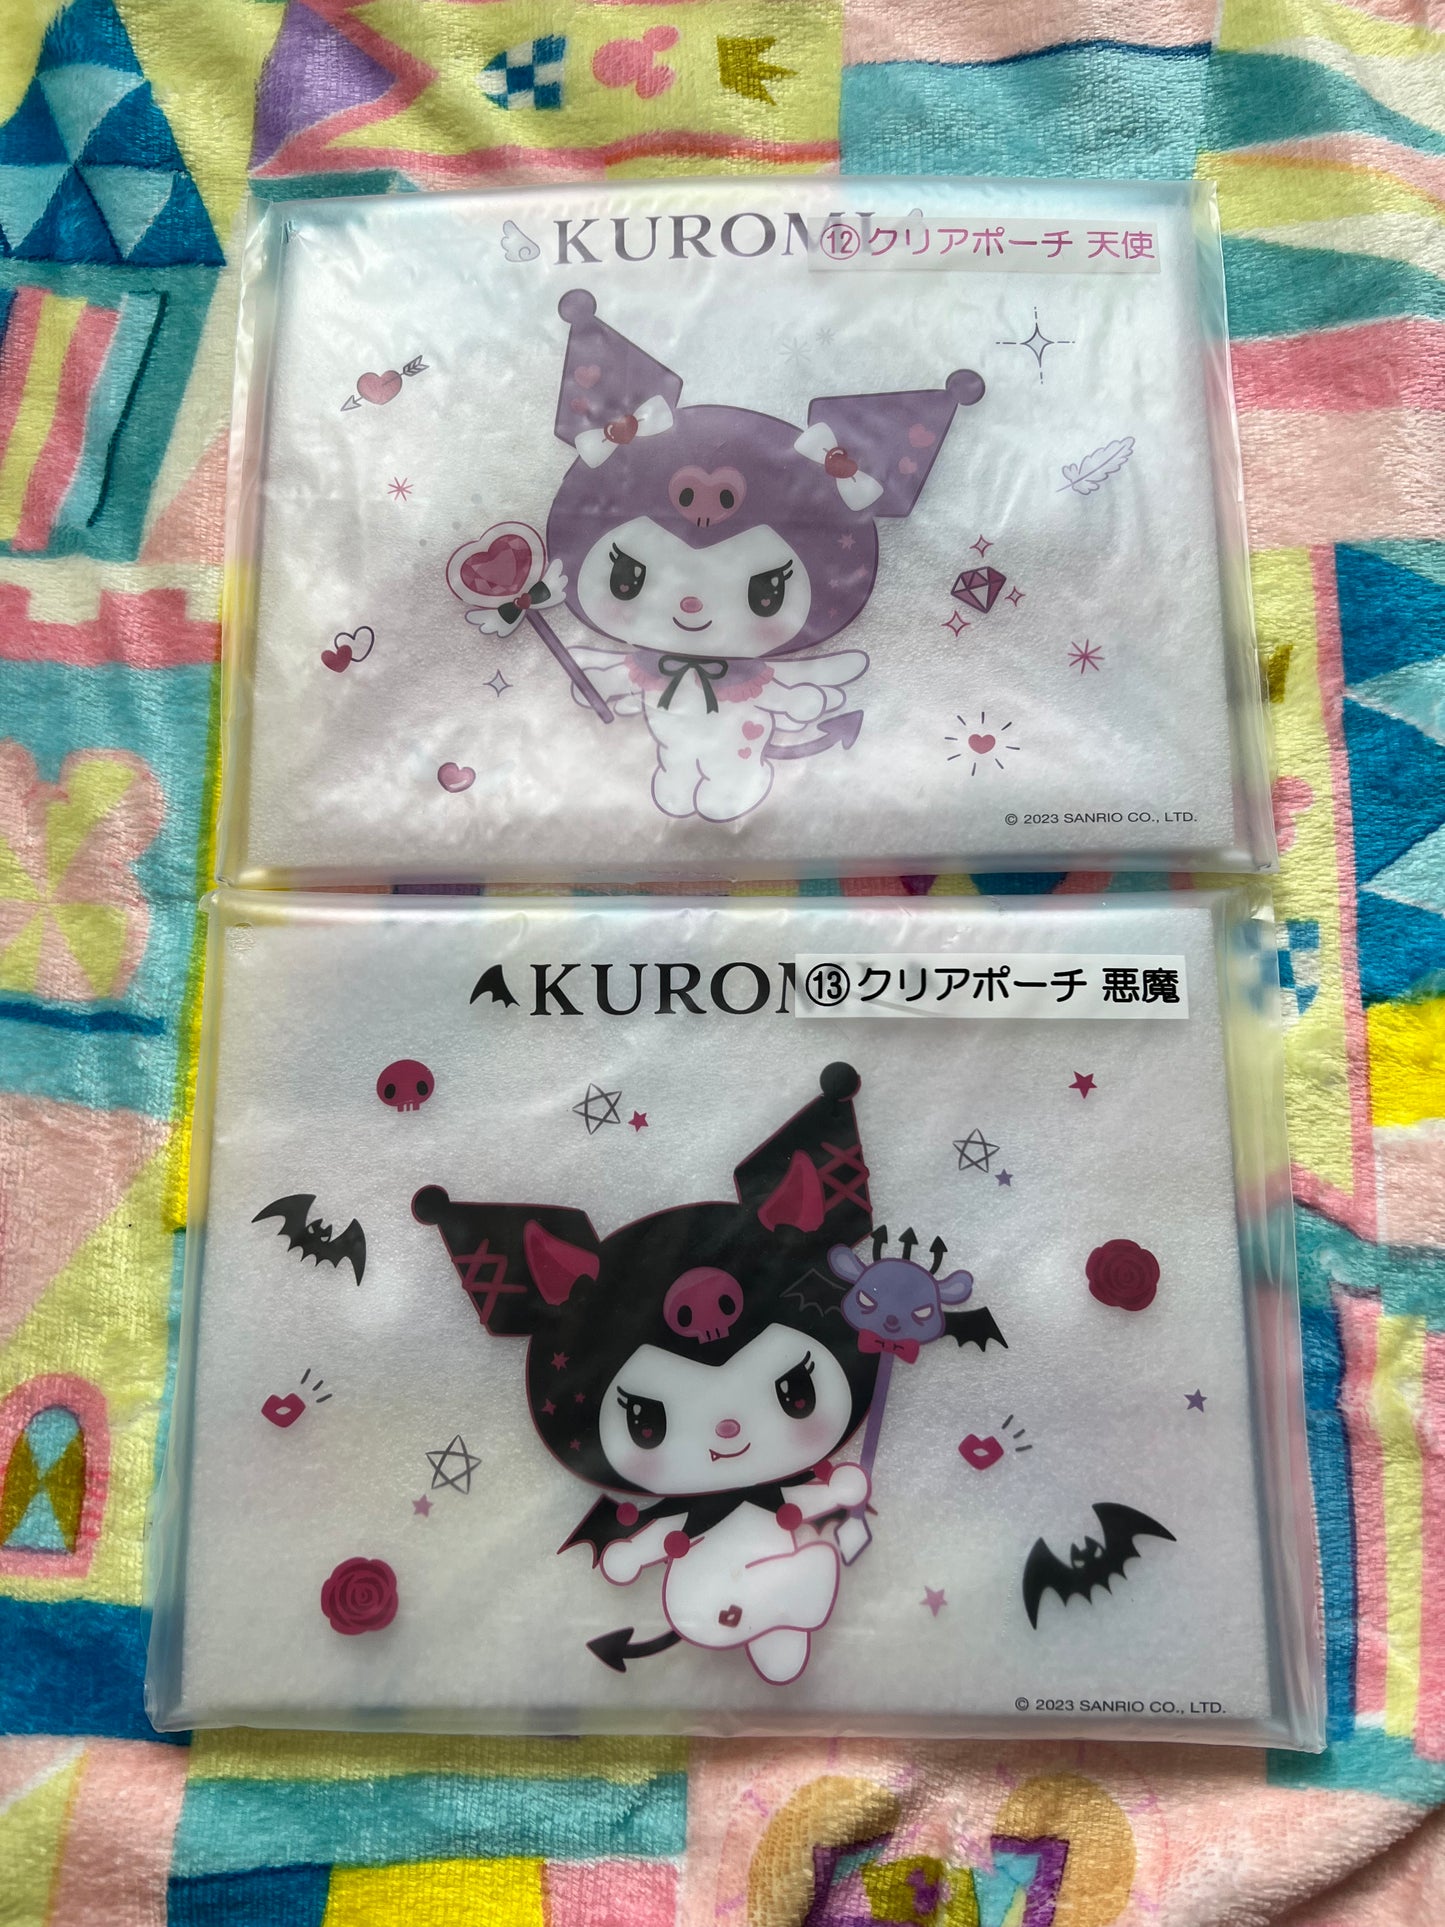 Kuromi Vinyl pouches